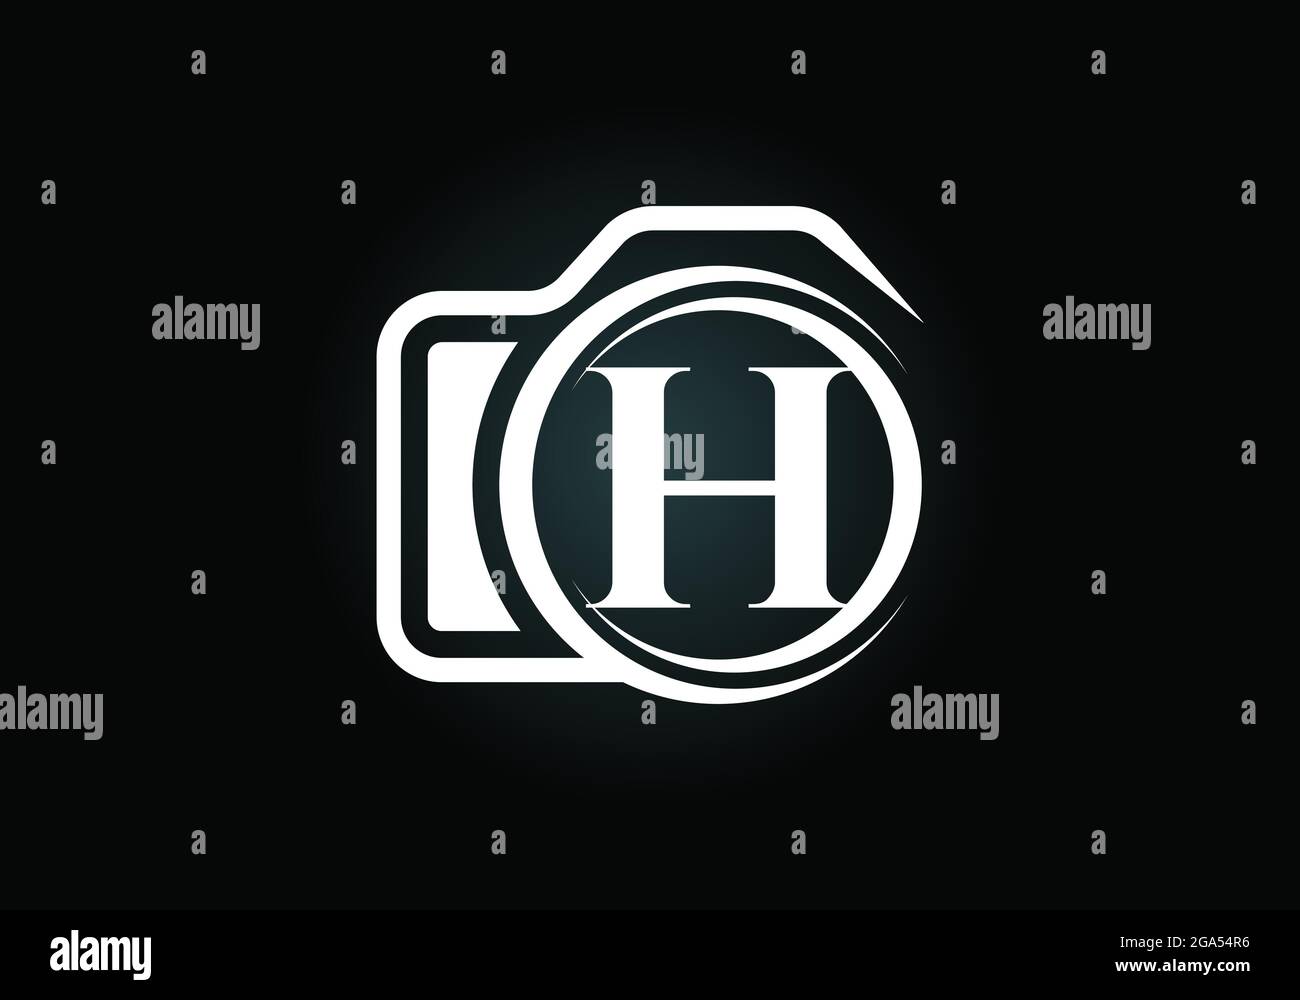 Lettre H initiale du monogramme avec une icône d'appareil photo. Illustration vectorielle du logo de photographie. Design moderne du logo pour les entreprises et les entreprises de photographie Illustration de Vecteur